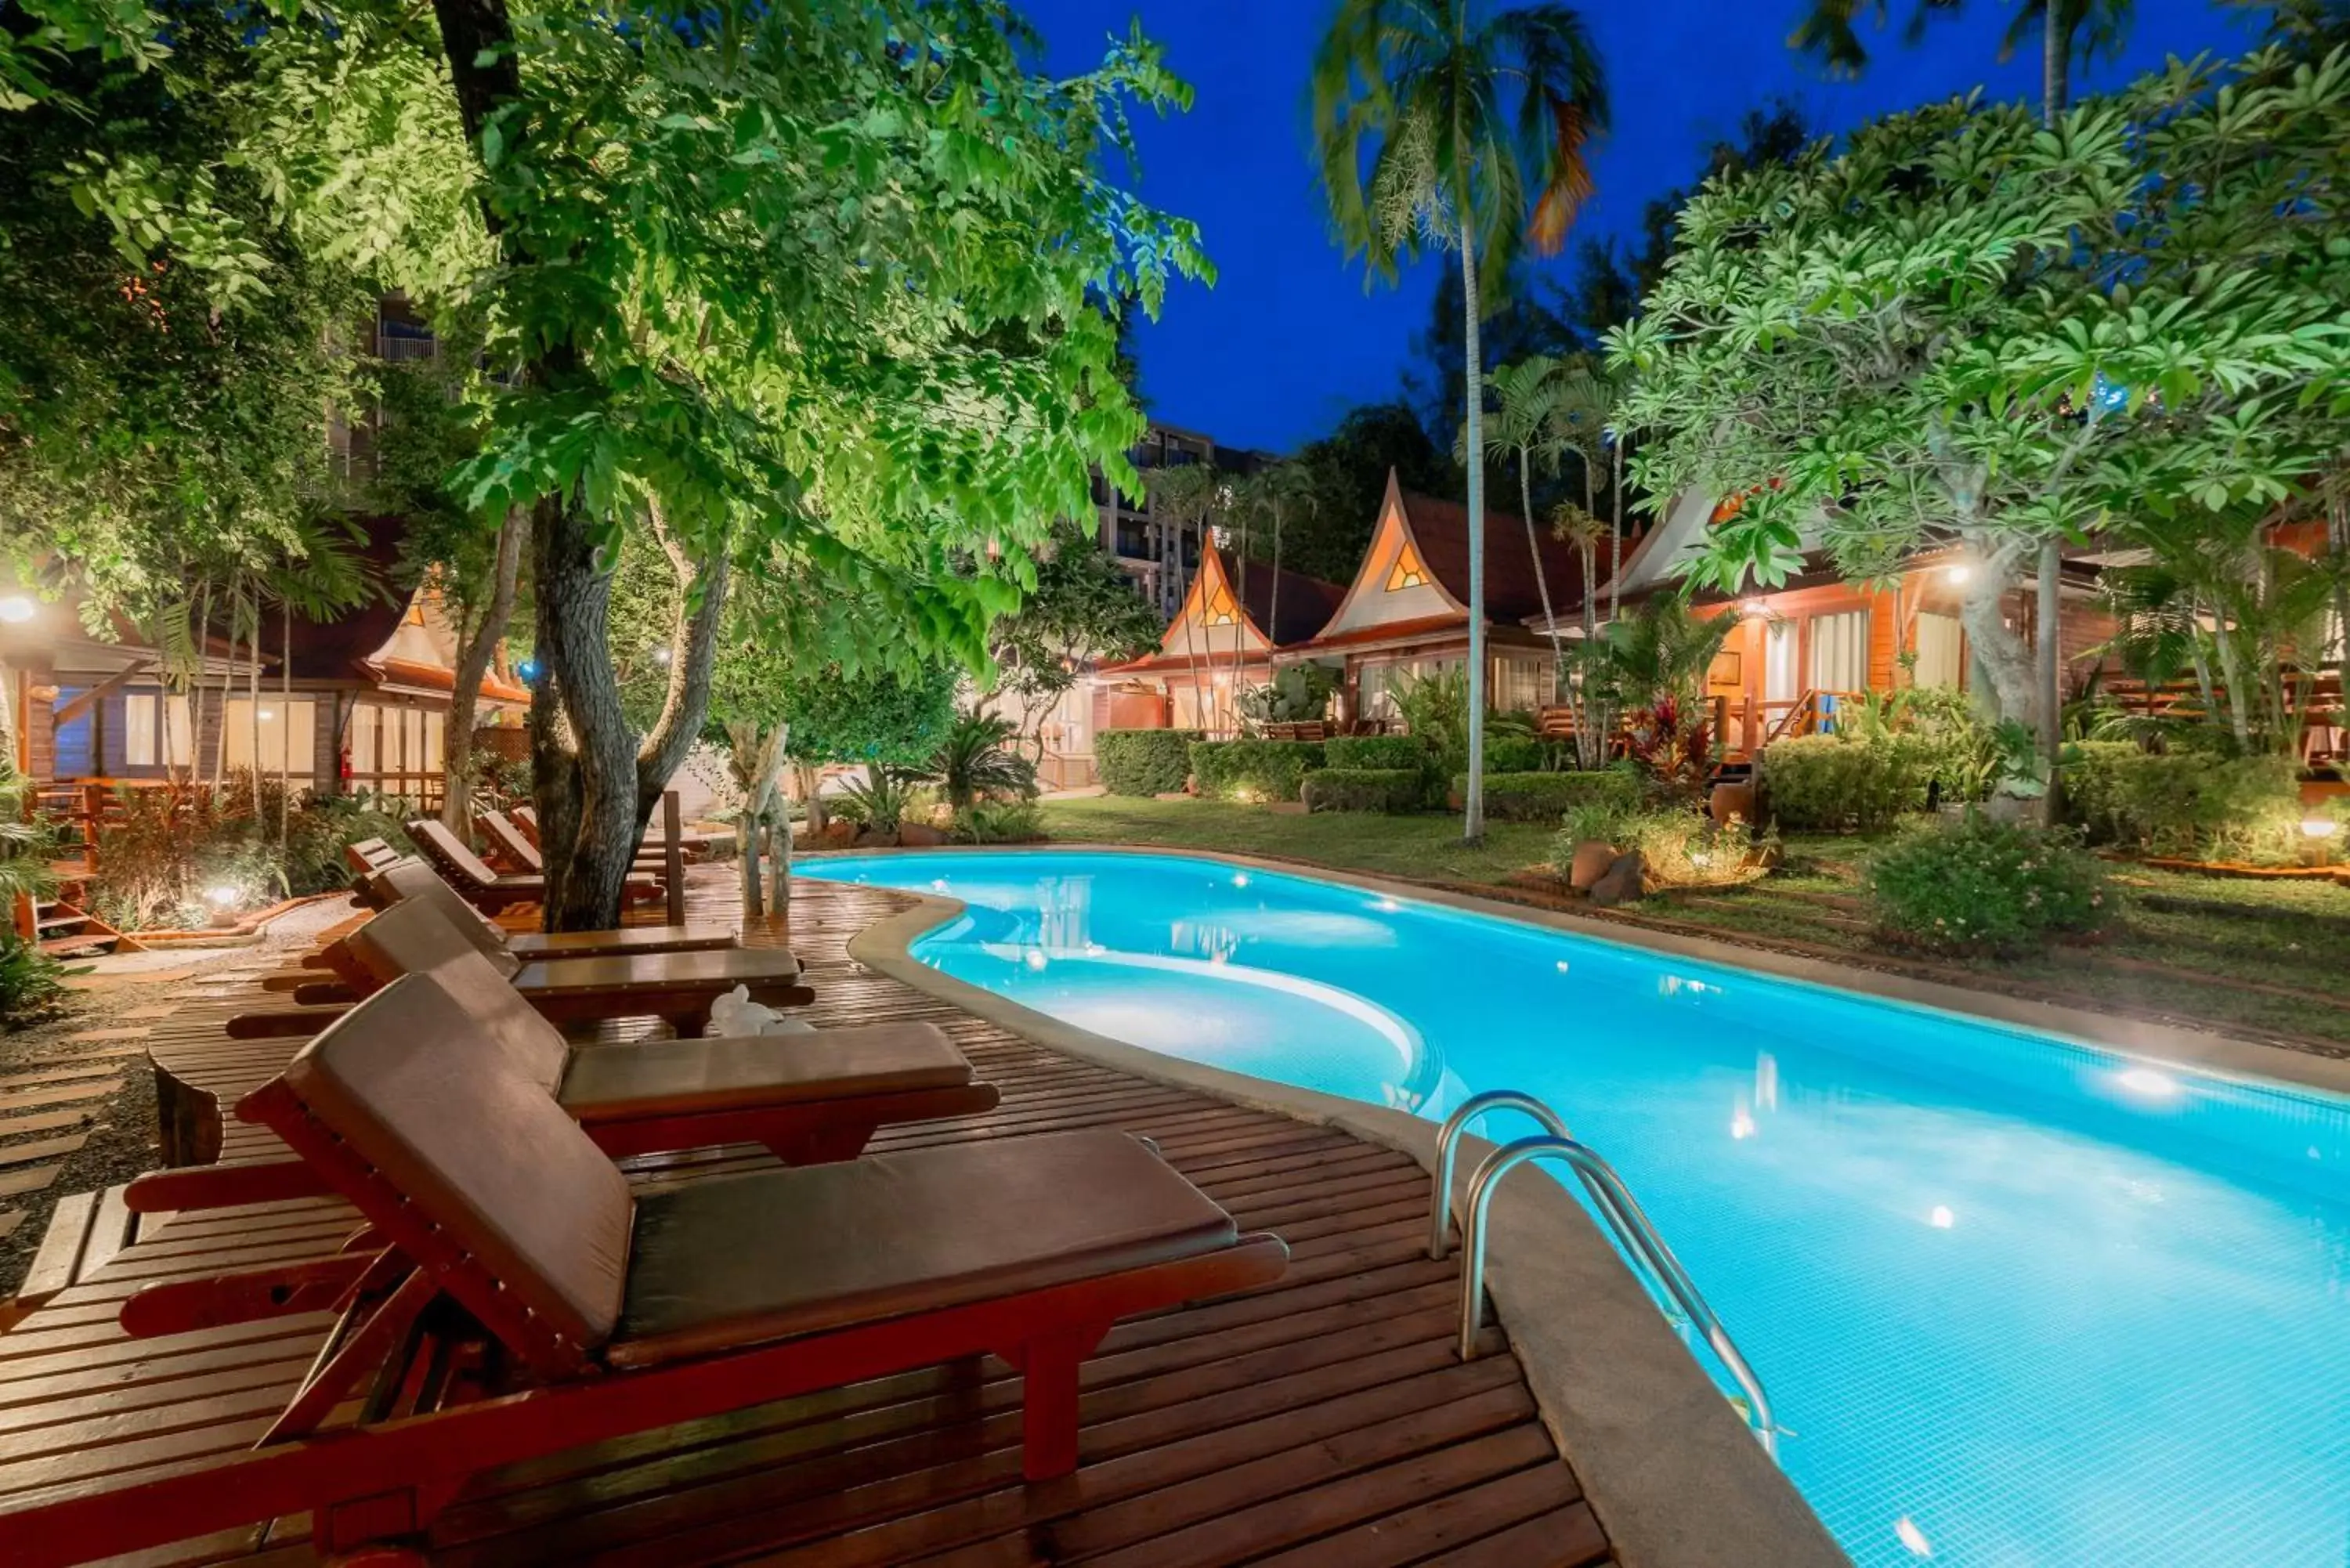 Swimming Pool in Baan Duangkaew Resort